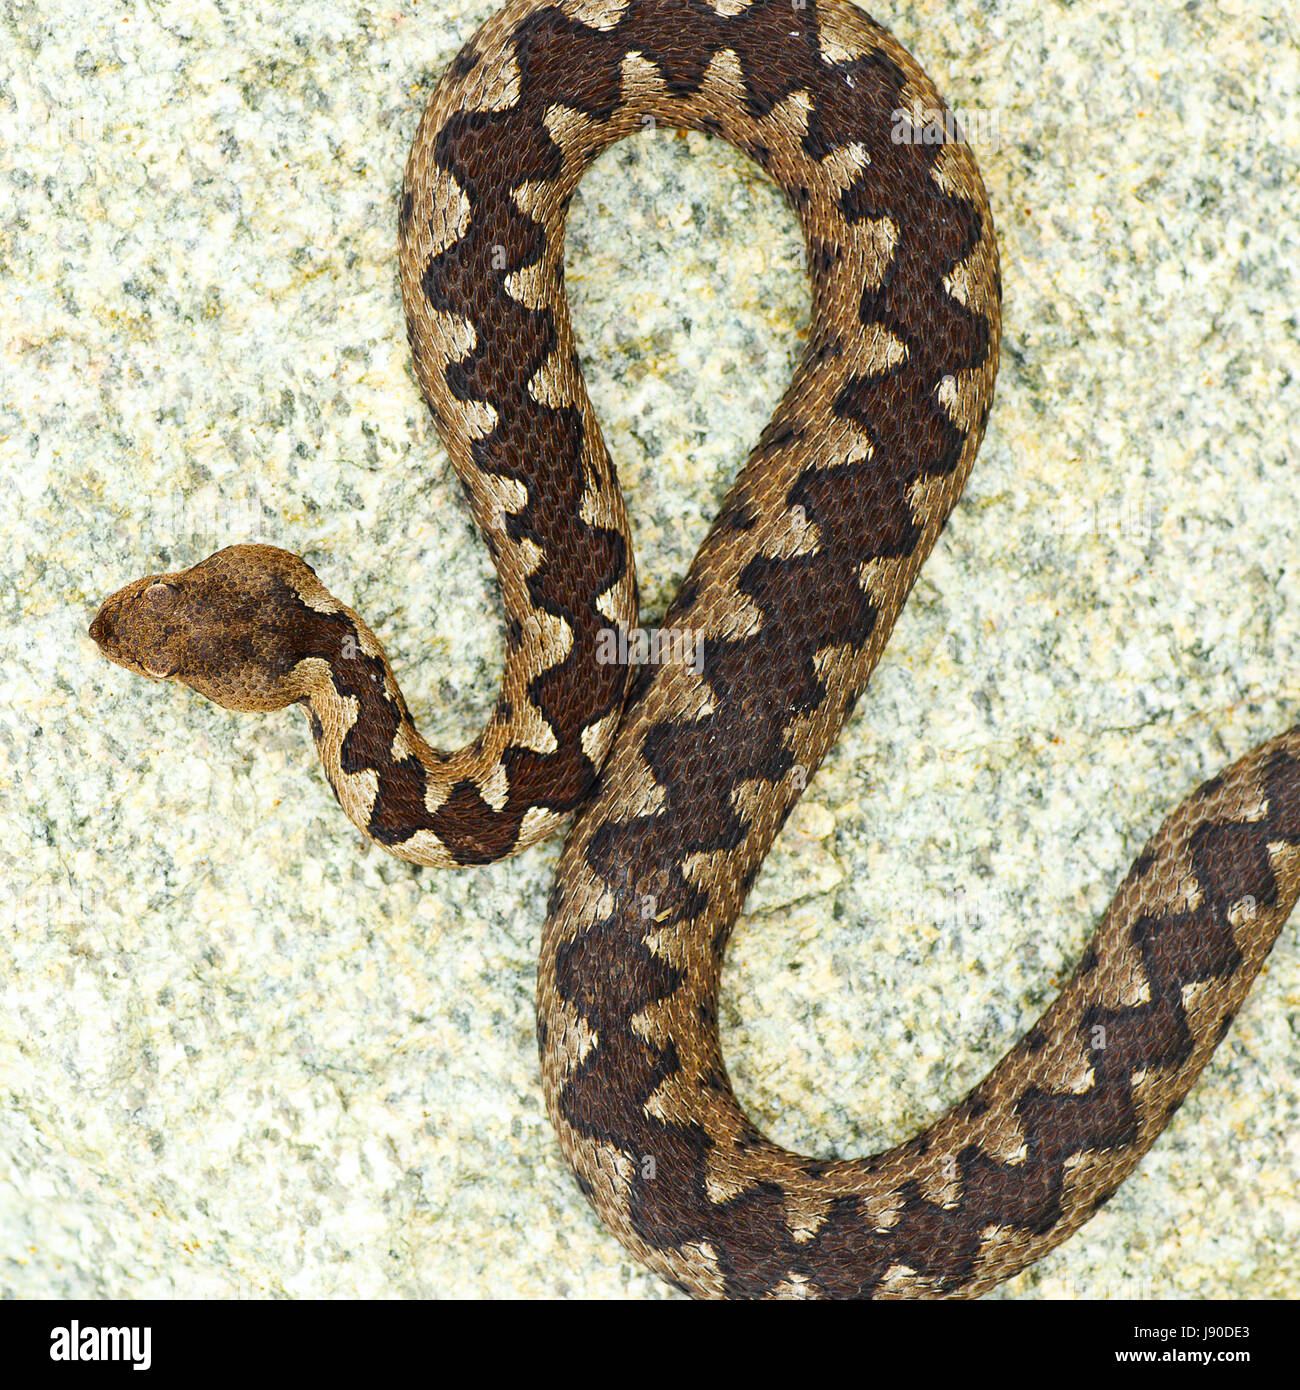 Beau motif sur Vipera ammodytes retour ( la vipère à cornes du nez, l'un des plus les serpents venimeux d'Europe ) Banque D'Images